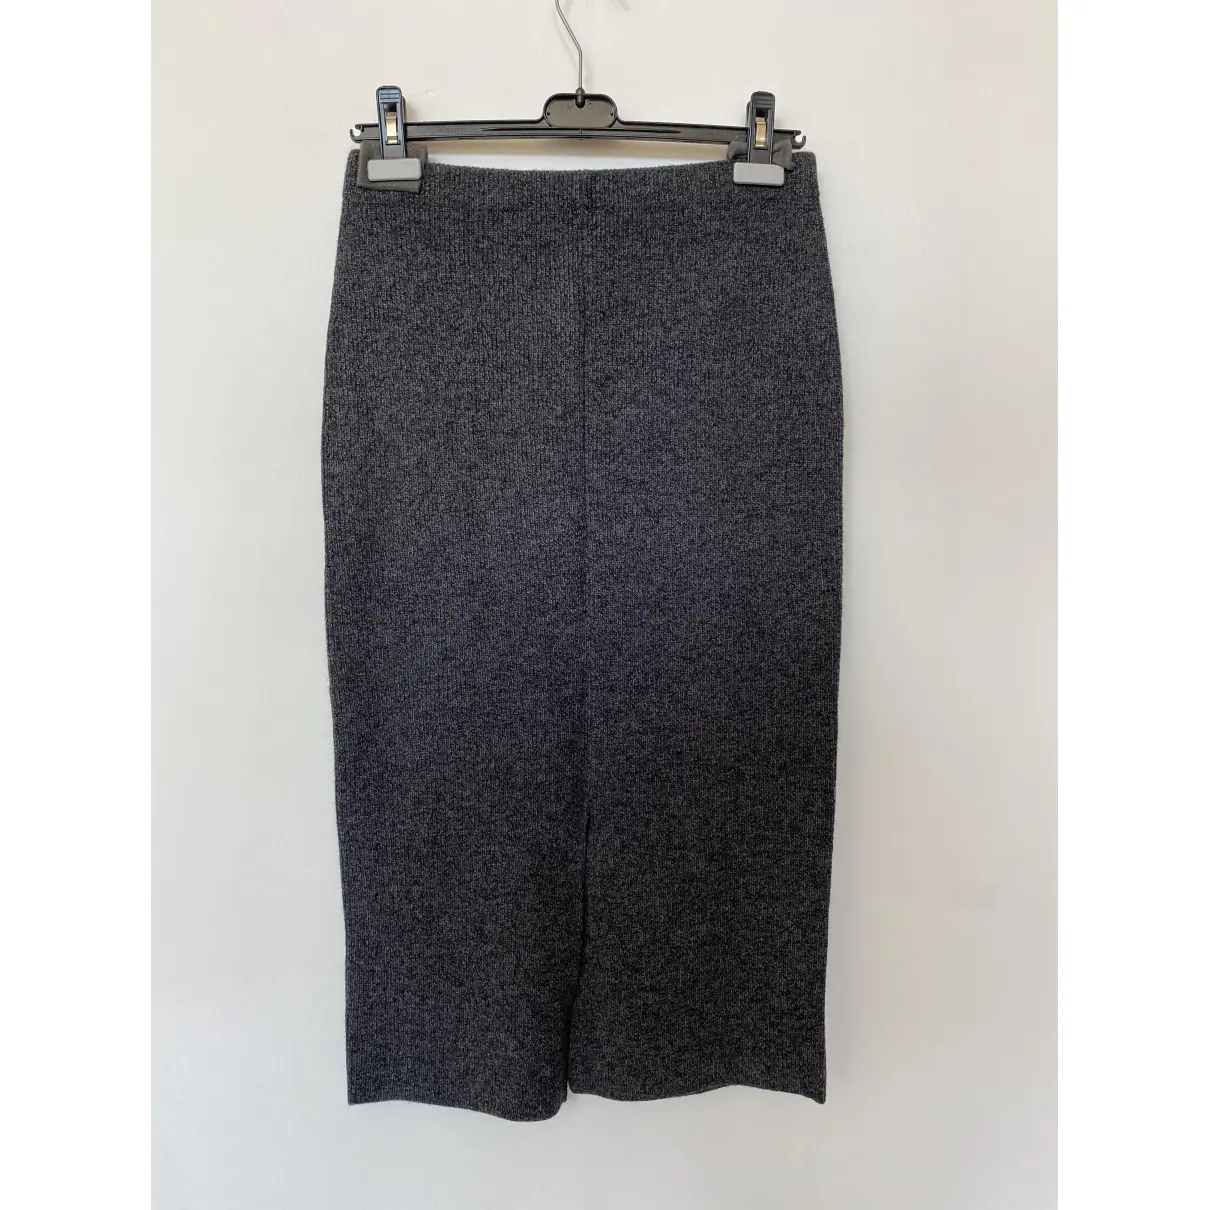 Buy Polo Ralph Lauren Wool mid-length skirt online